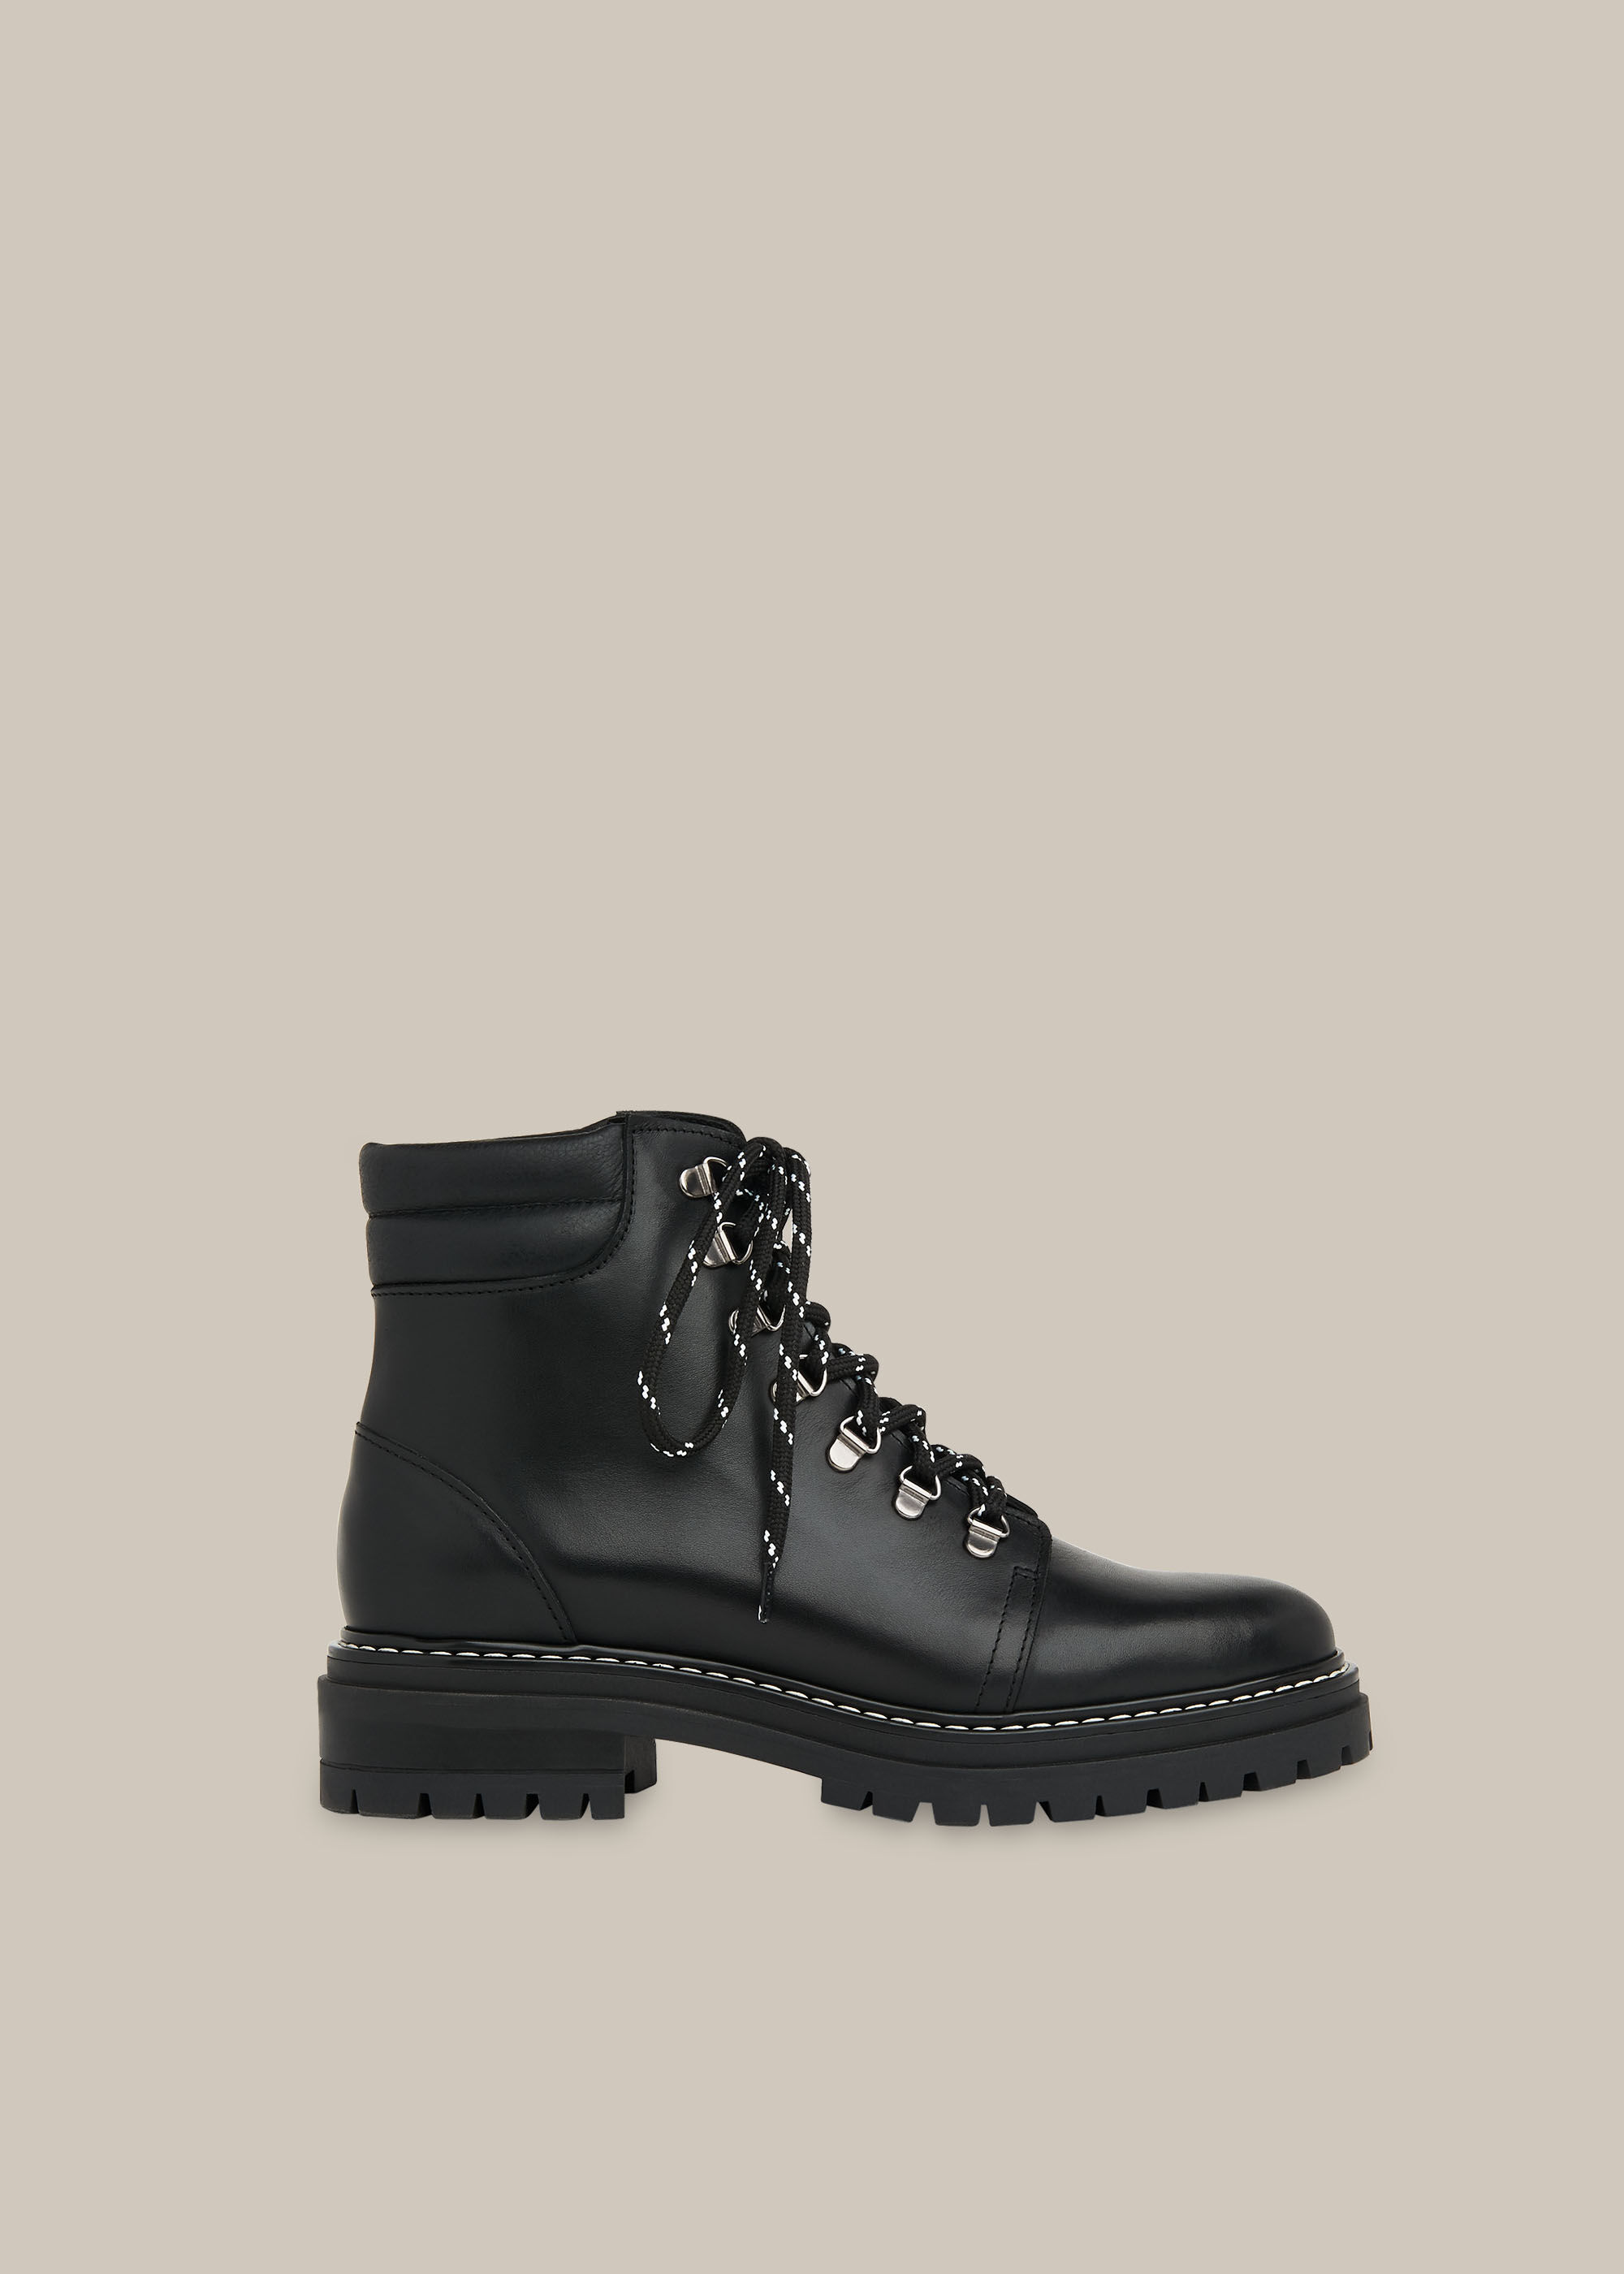 lace up black combat boots